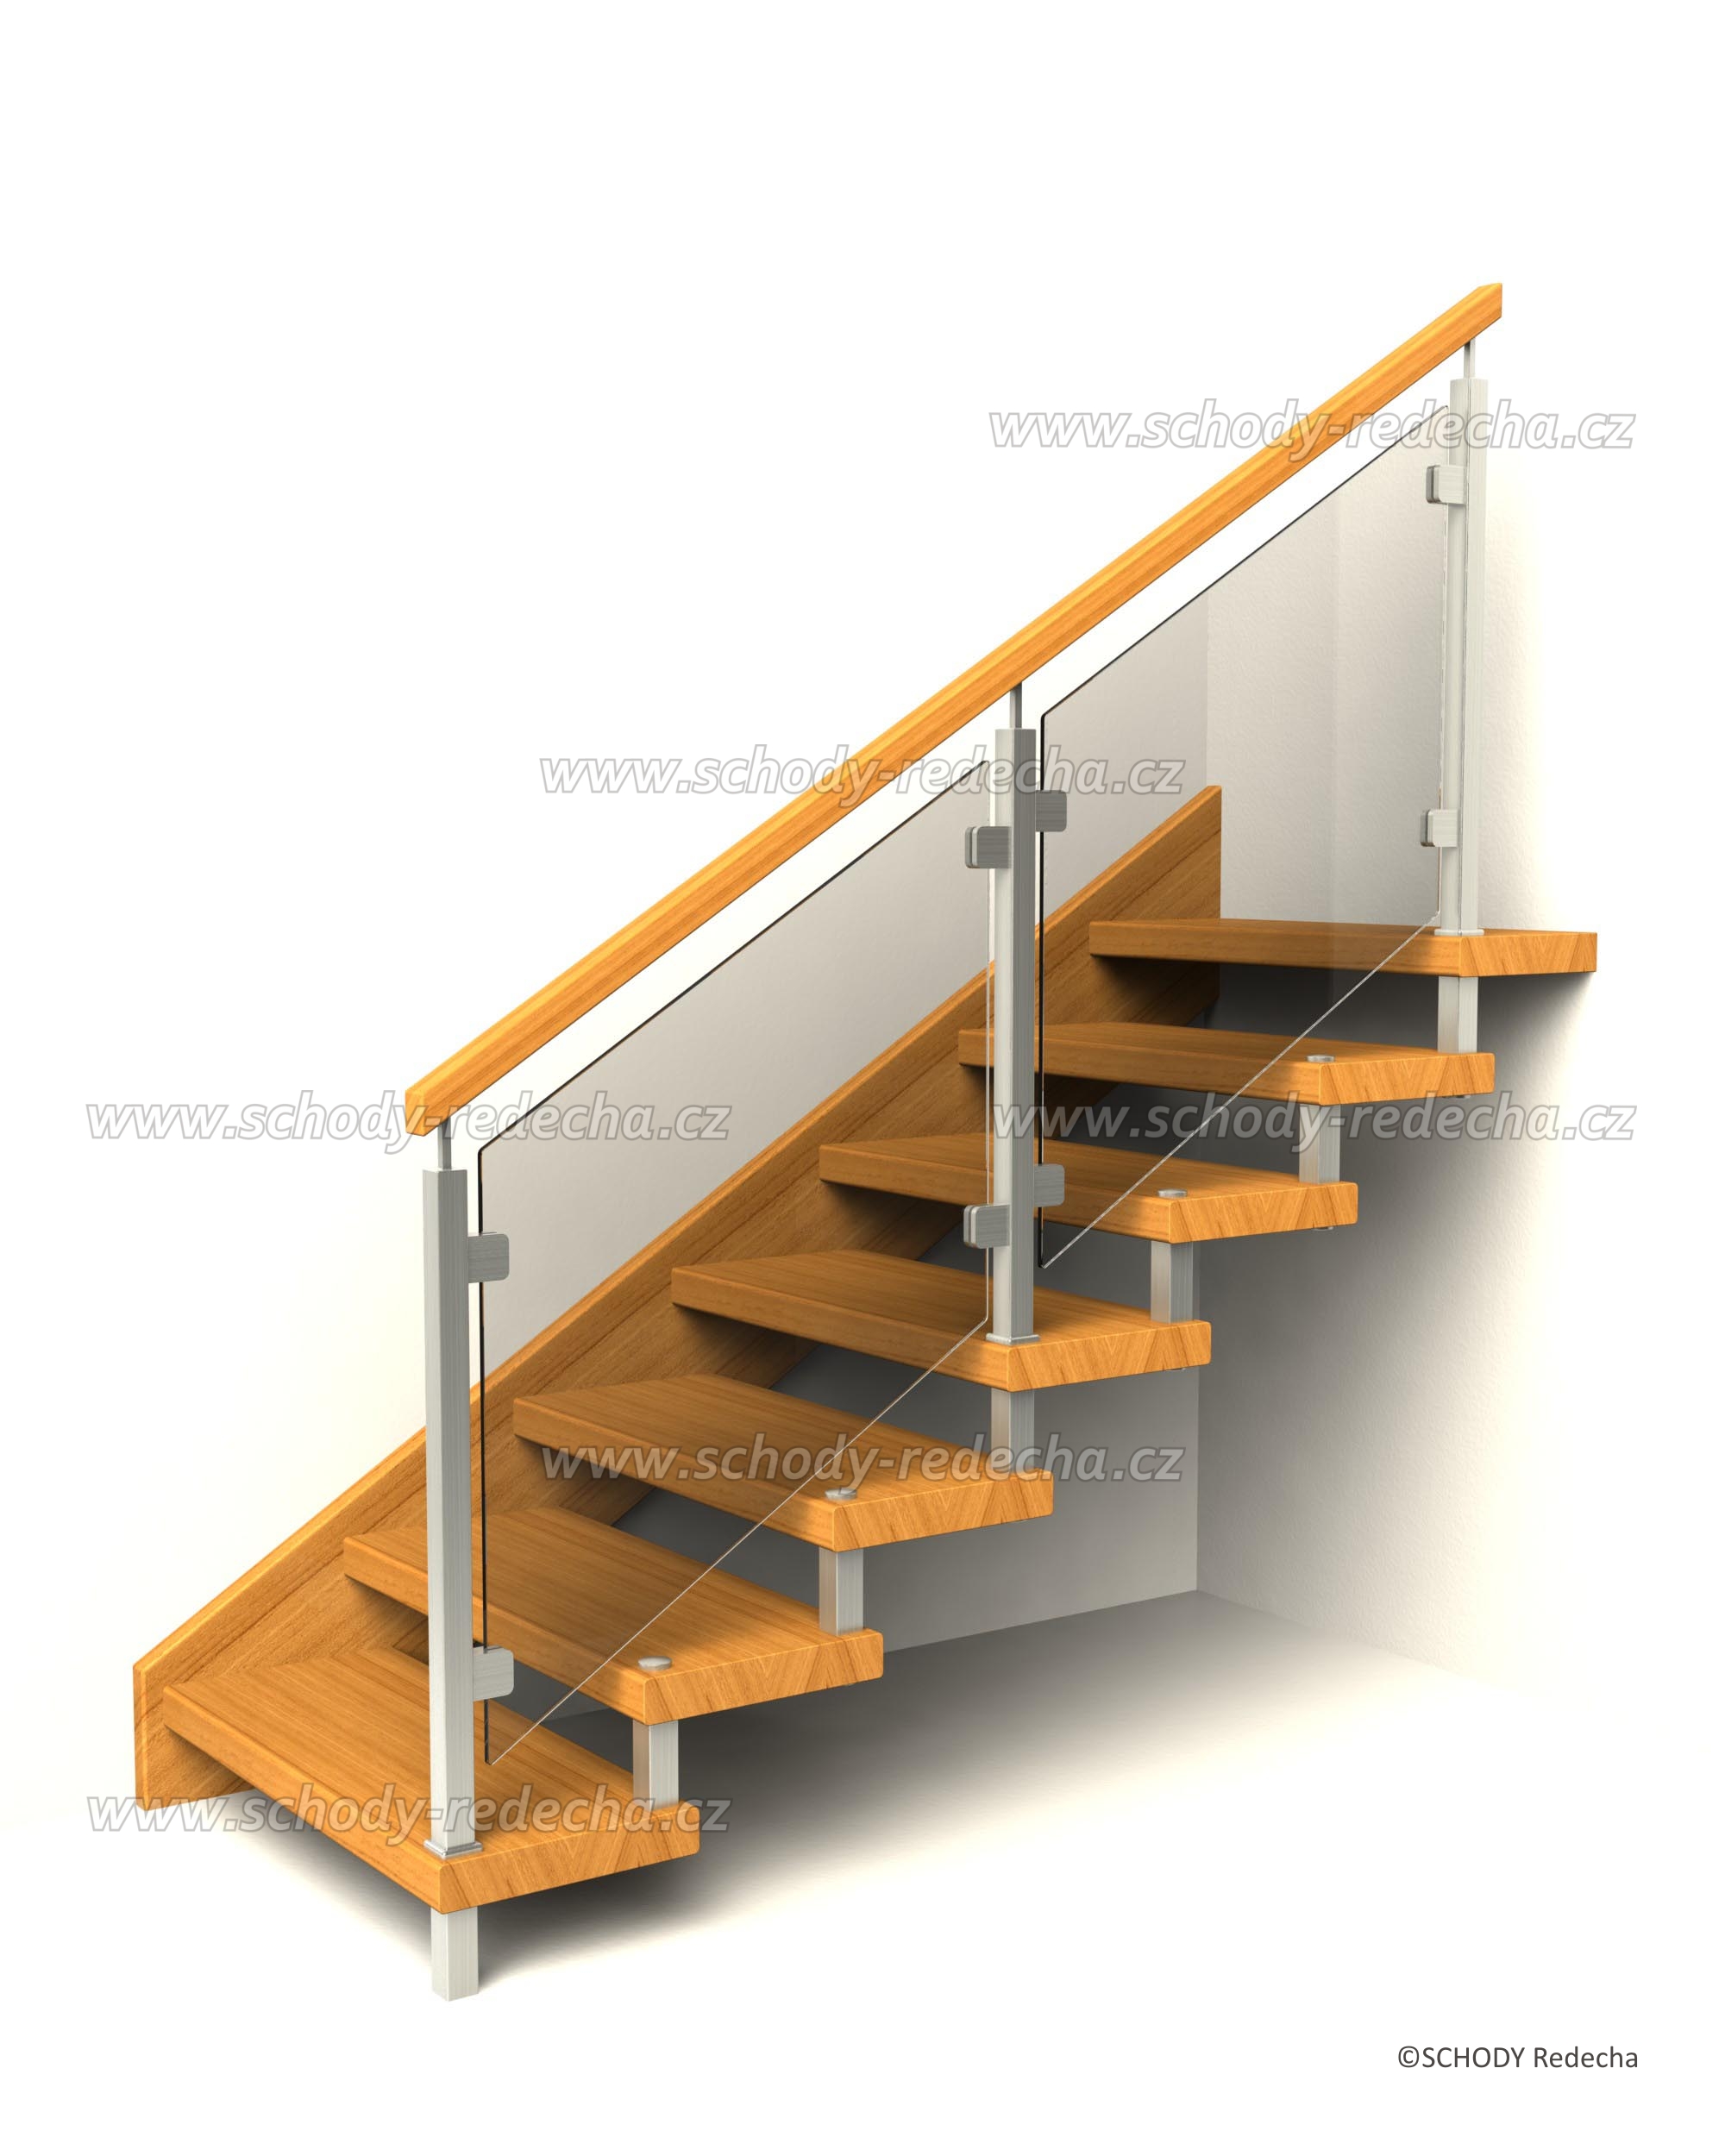 svornikova schodiste schody VIII24J6